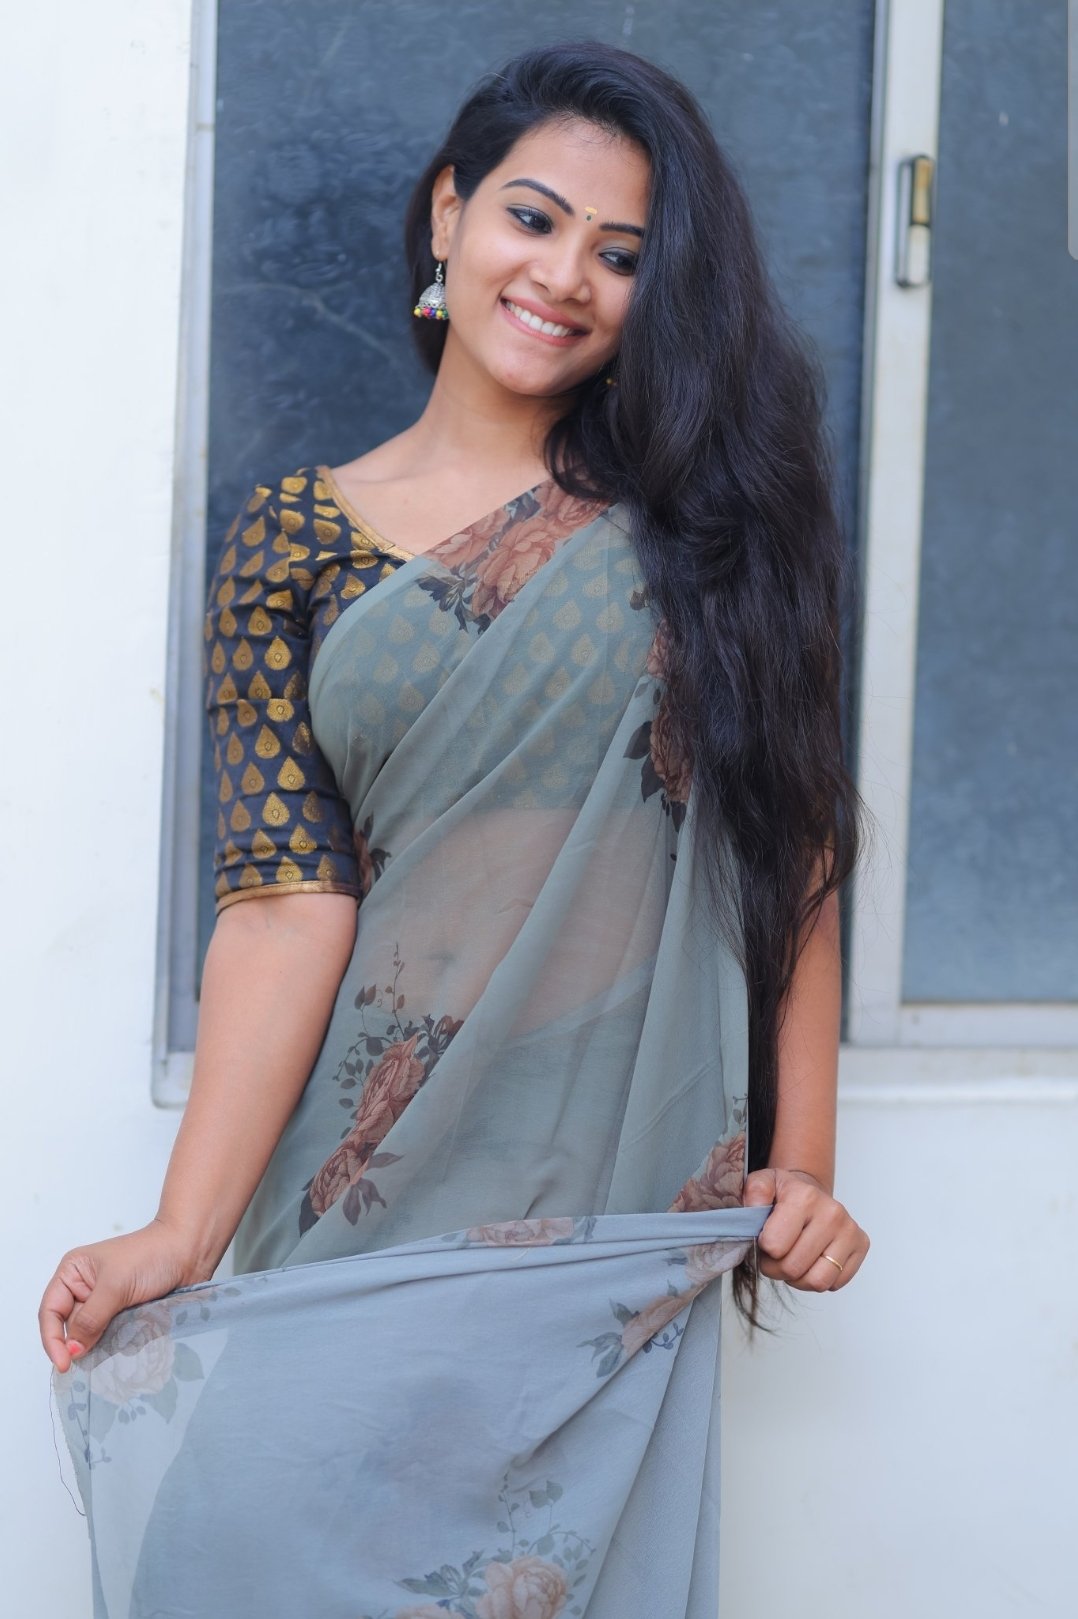 Actress Stills on X: Actress cute in transparent saree